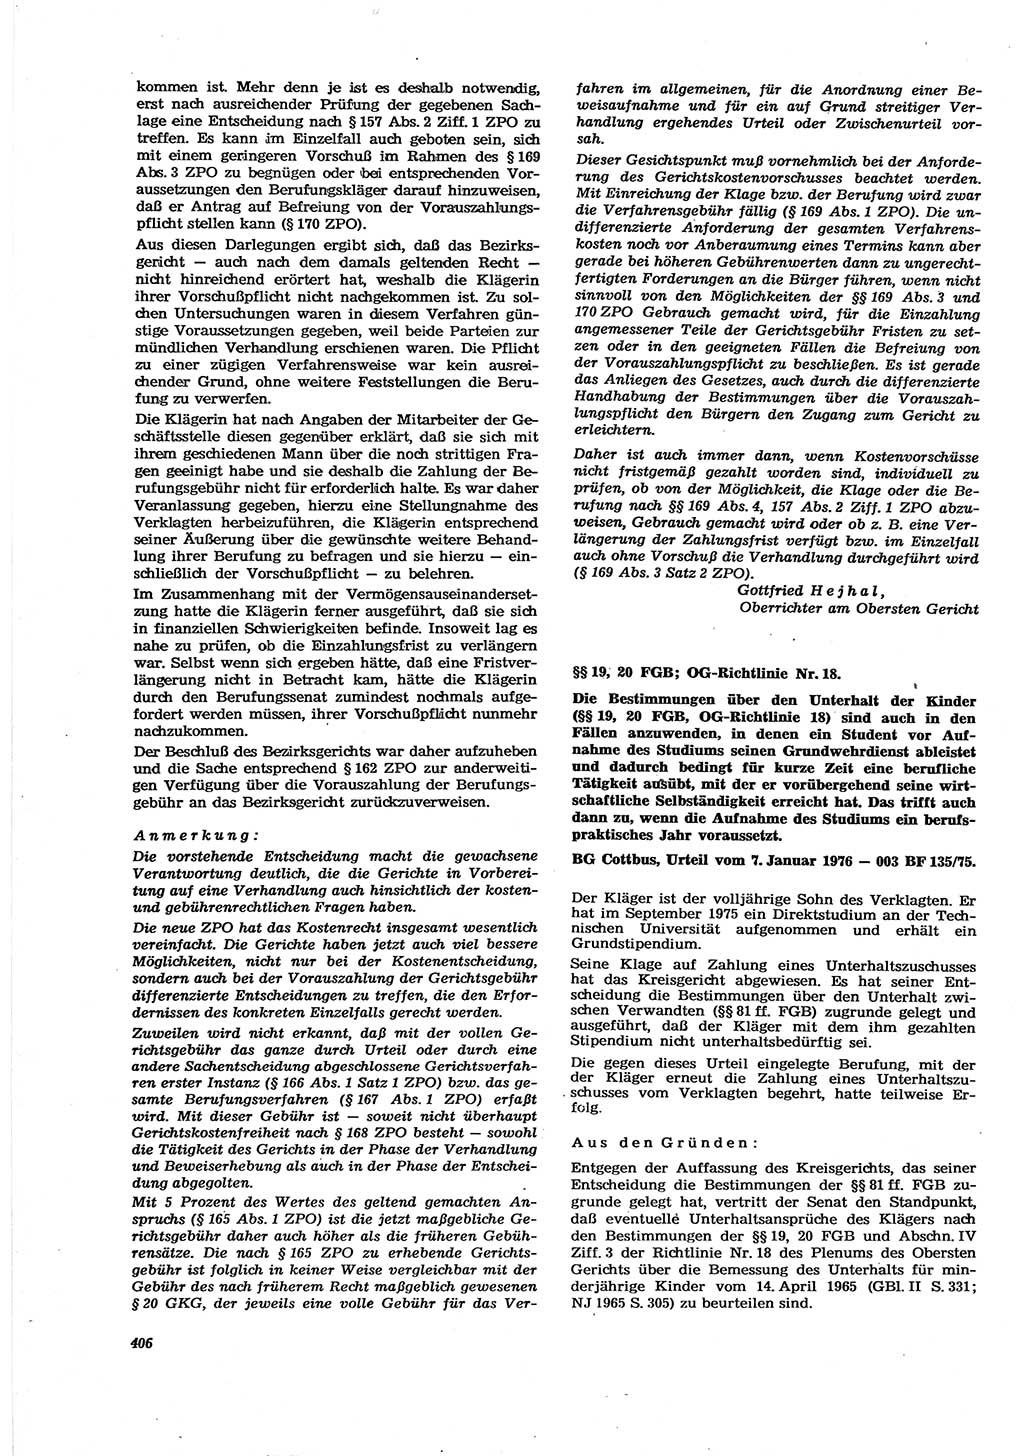 Neue Justiz (NJ), Zeitschrift für Recht und Rechtswissenschaft [Deutsche Demokratische Republik (DDR)], 30. Jahrgang 1976, Seite 406 (NJ DDR 1976, S. 406)